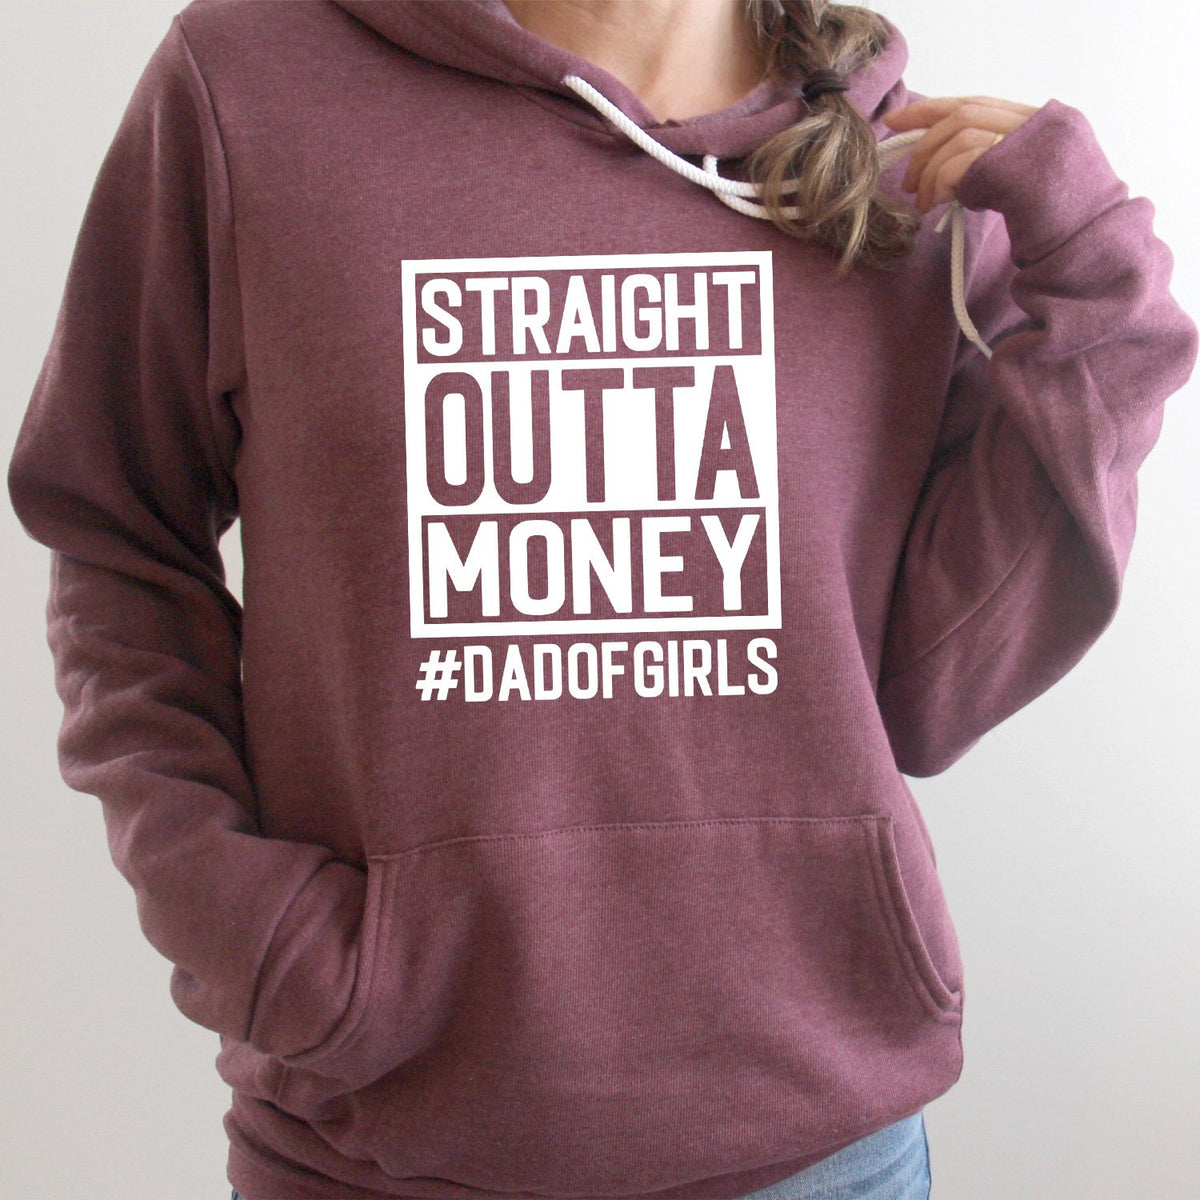 Straight Outta Money DAD OF GIRLS - Hoodie Sweatshirt